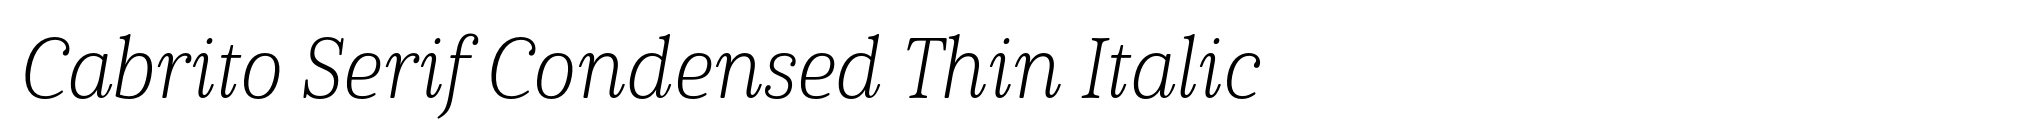 Cabrito Serif Condensed Thin Italic image